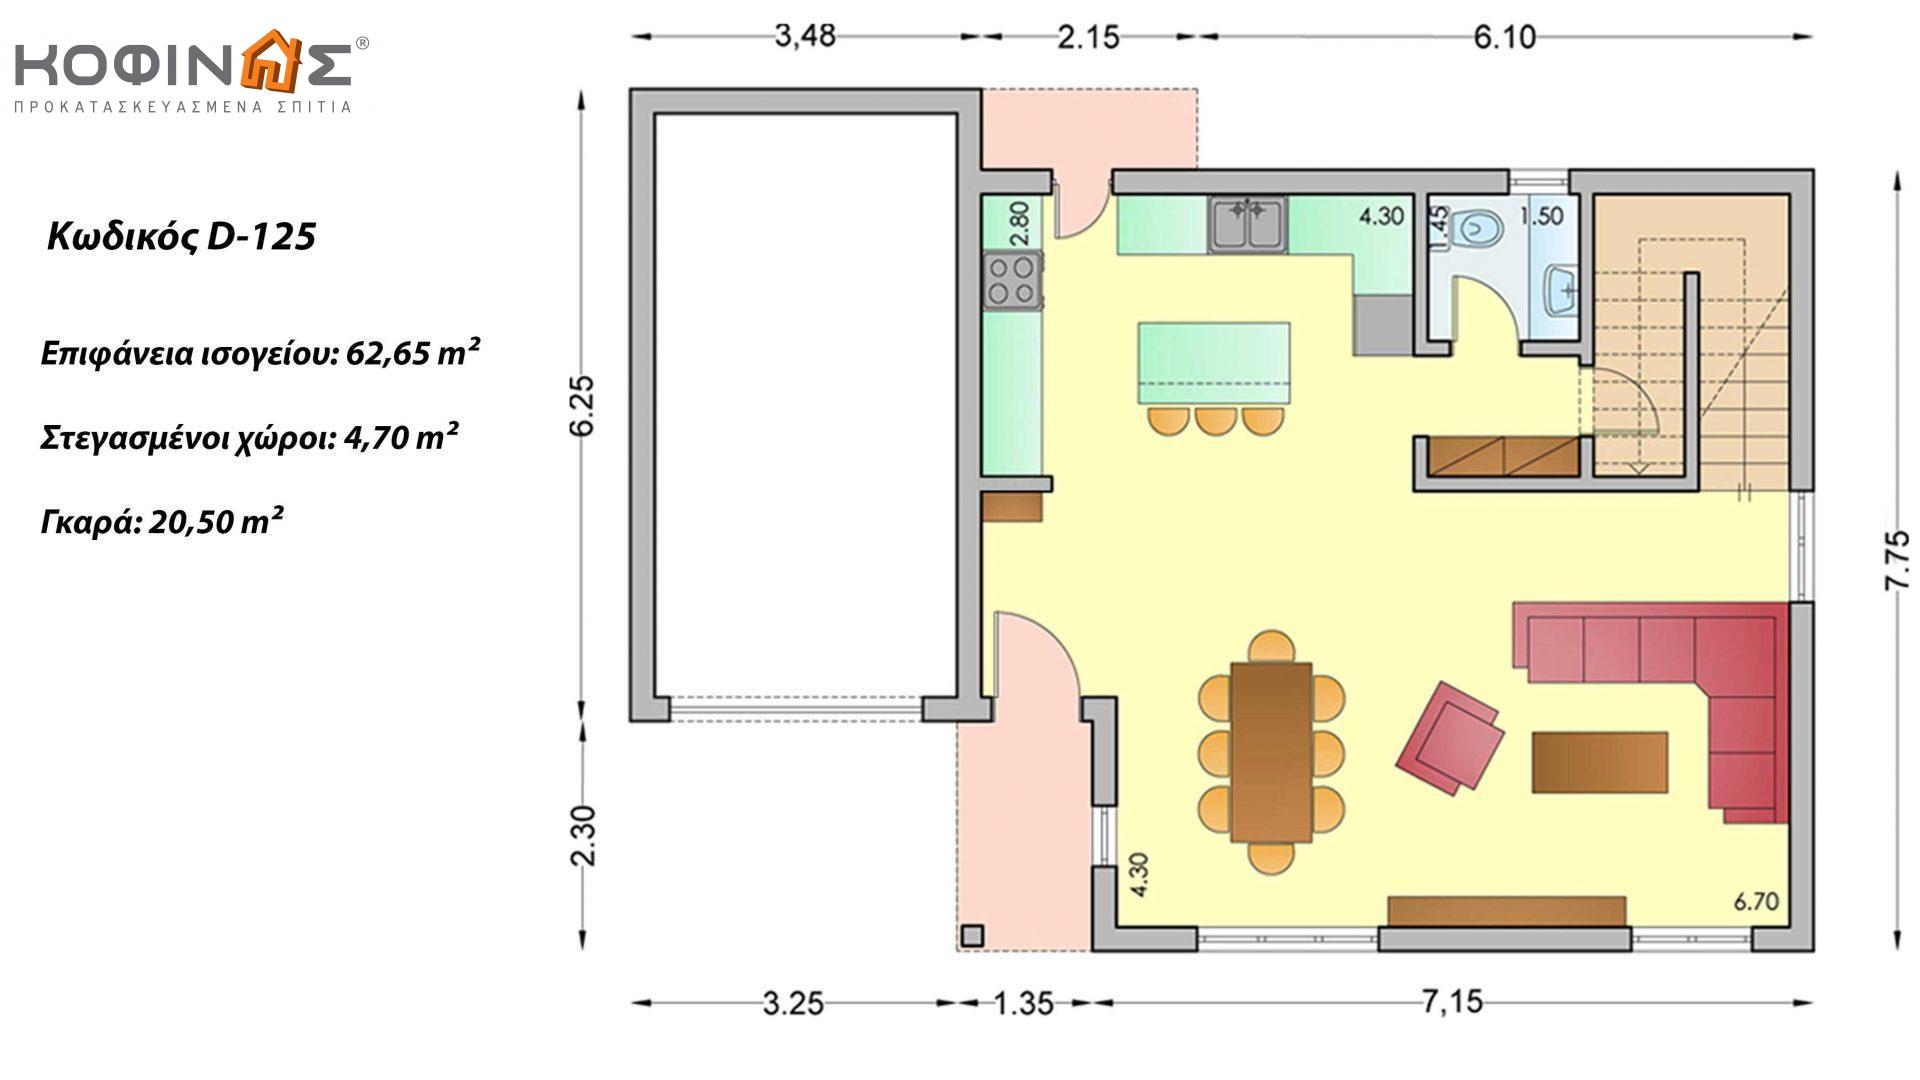 Διώροφη Κατοικία D-125, συνολικής επιφάνειας 125,30 τ.μ., +Γκαράζ 20.50 m²(=145.80 m²),συνολική επιφάνεια στεγασμένων χώρων 4.70 τ.μ., μπαλκόνια 20.50 τ.μ.